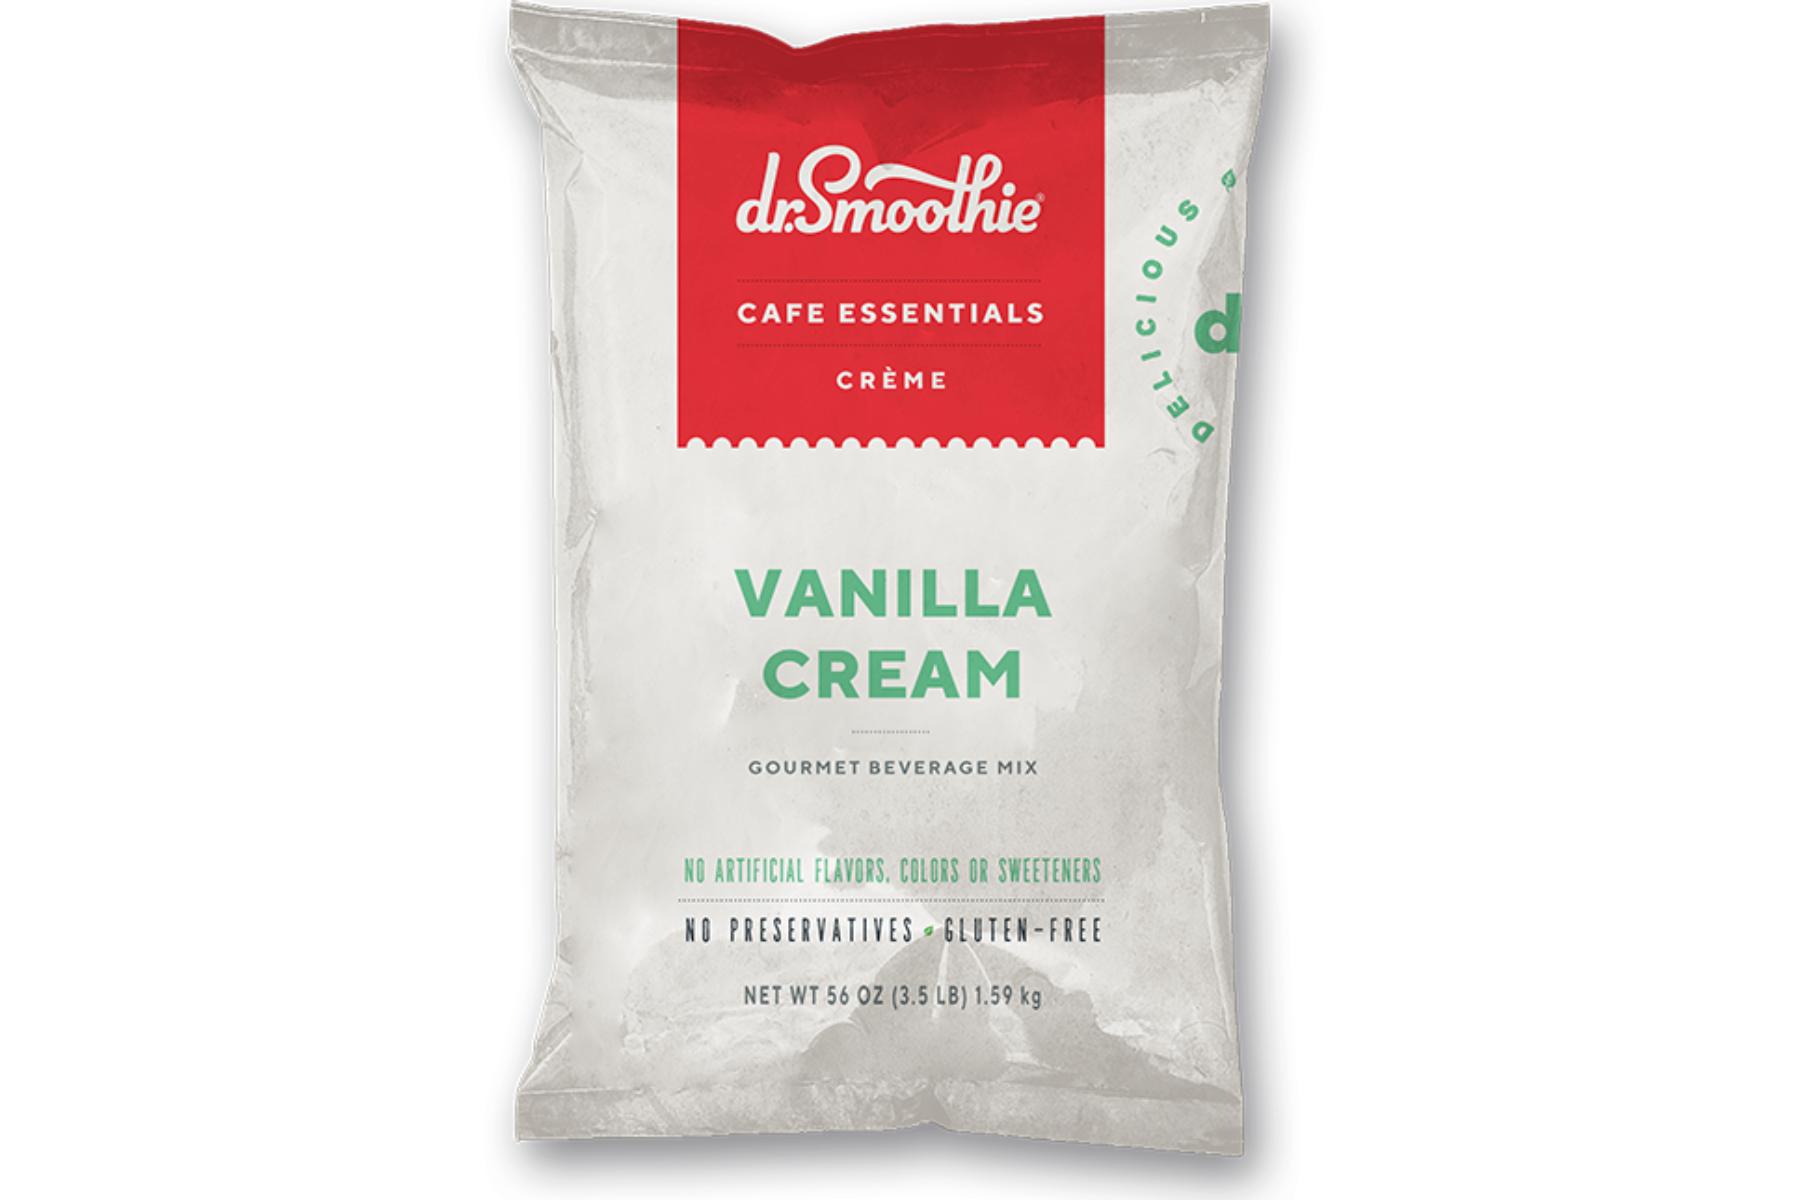 Dr. Smoothie Cafe Essentials Creme - 3.5lb Bulk Bag: Vanilla Cream